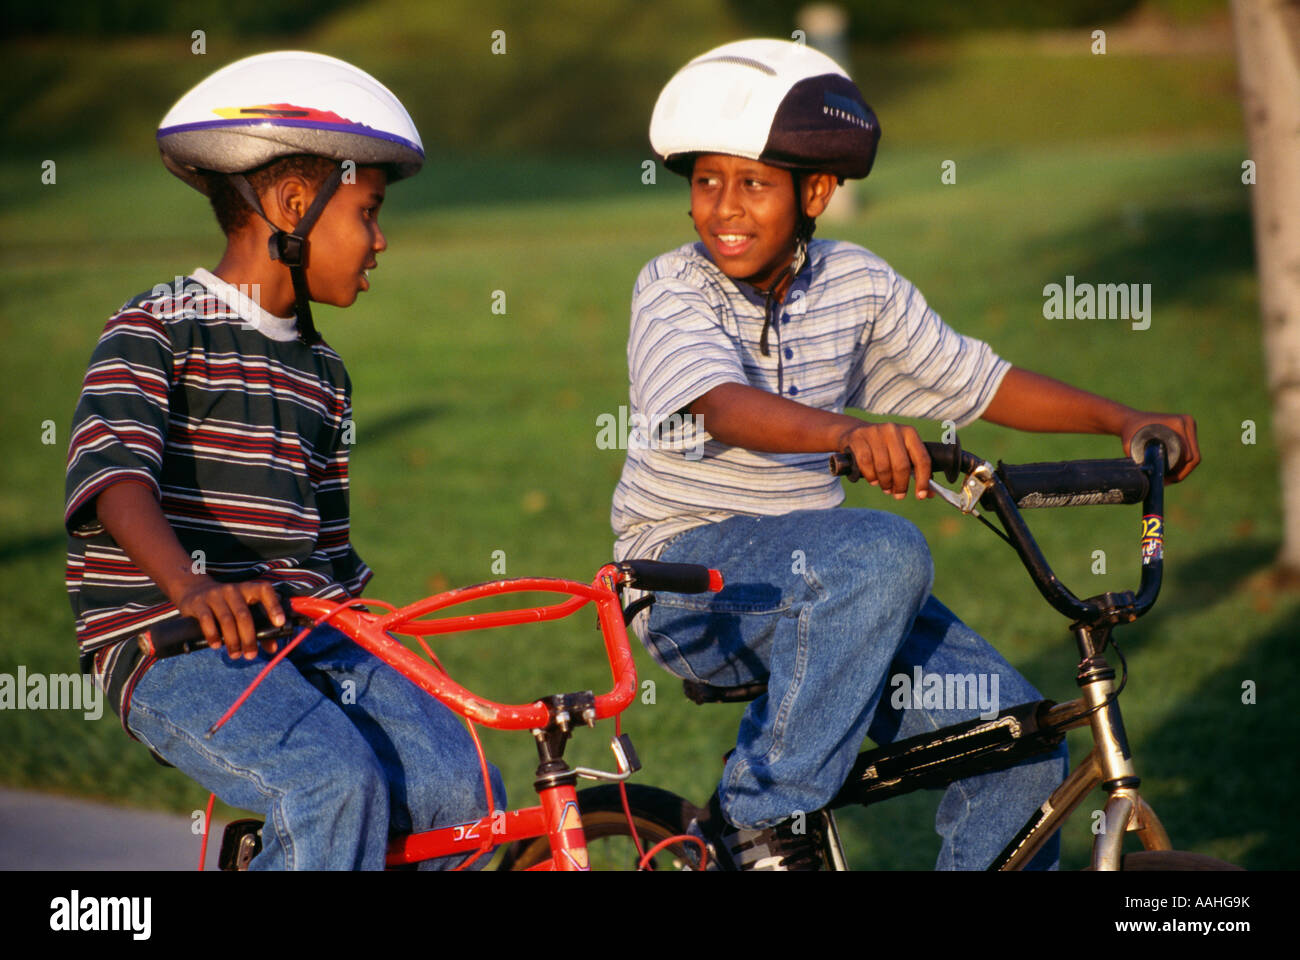 Un niño de tres años, con un casco de bicicleta y gafas de sol en su  bicicleta Fotografía de stock - Alamy